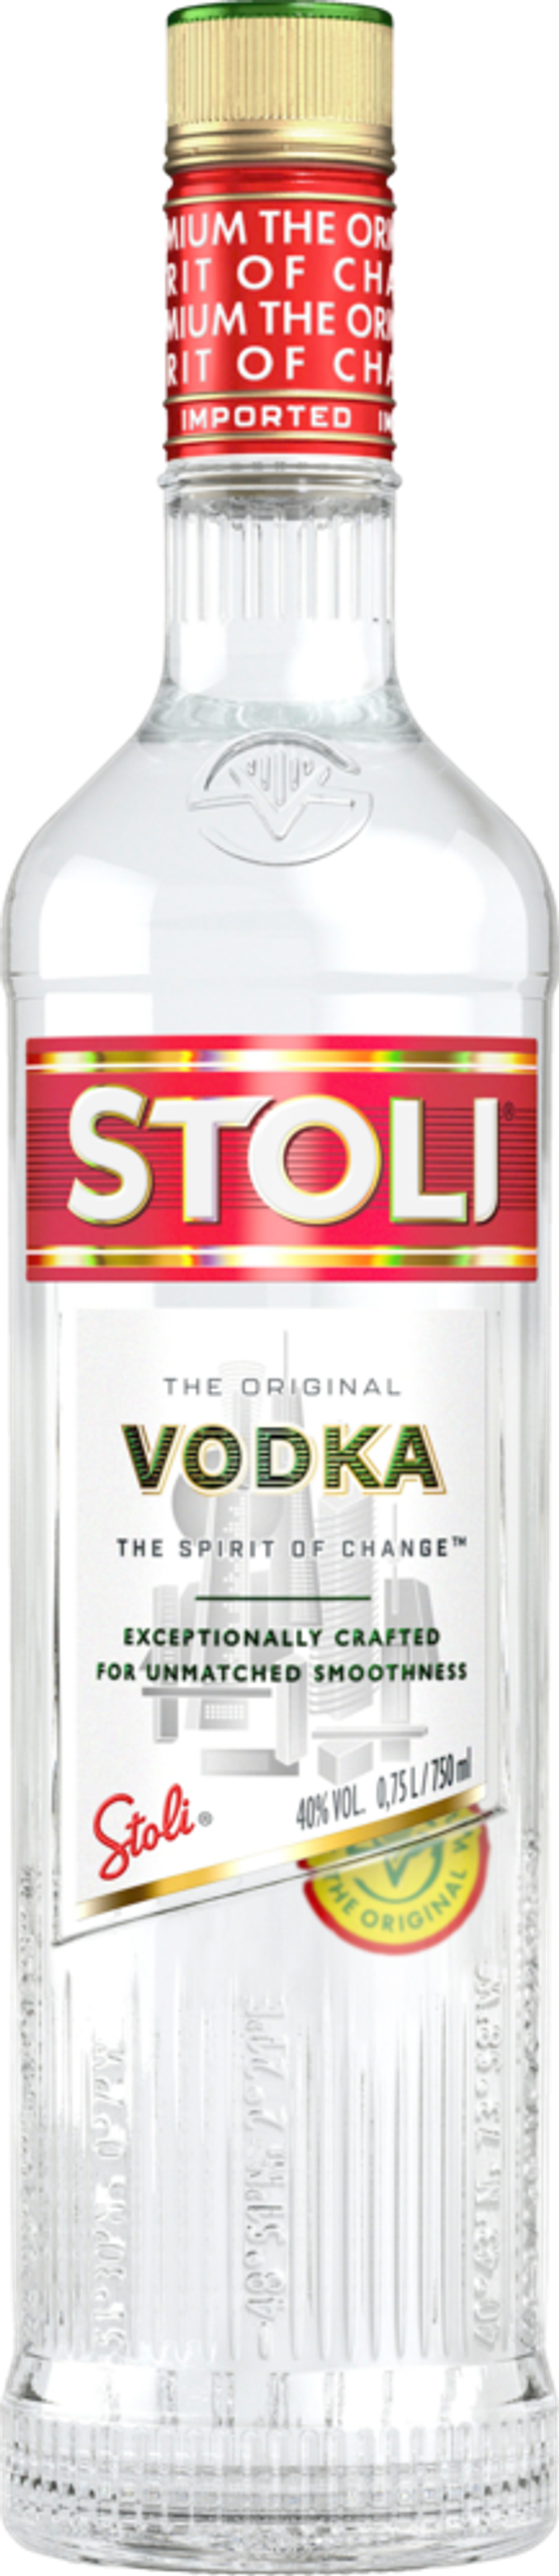 Erbjudanden på Stoli Vodka från Calle för 10,49 €